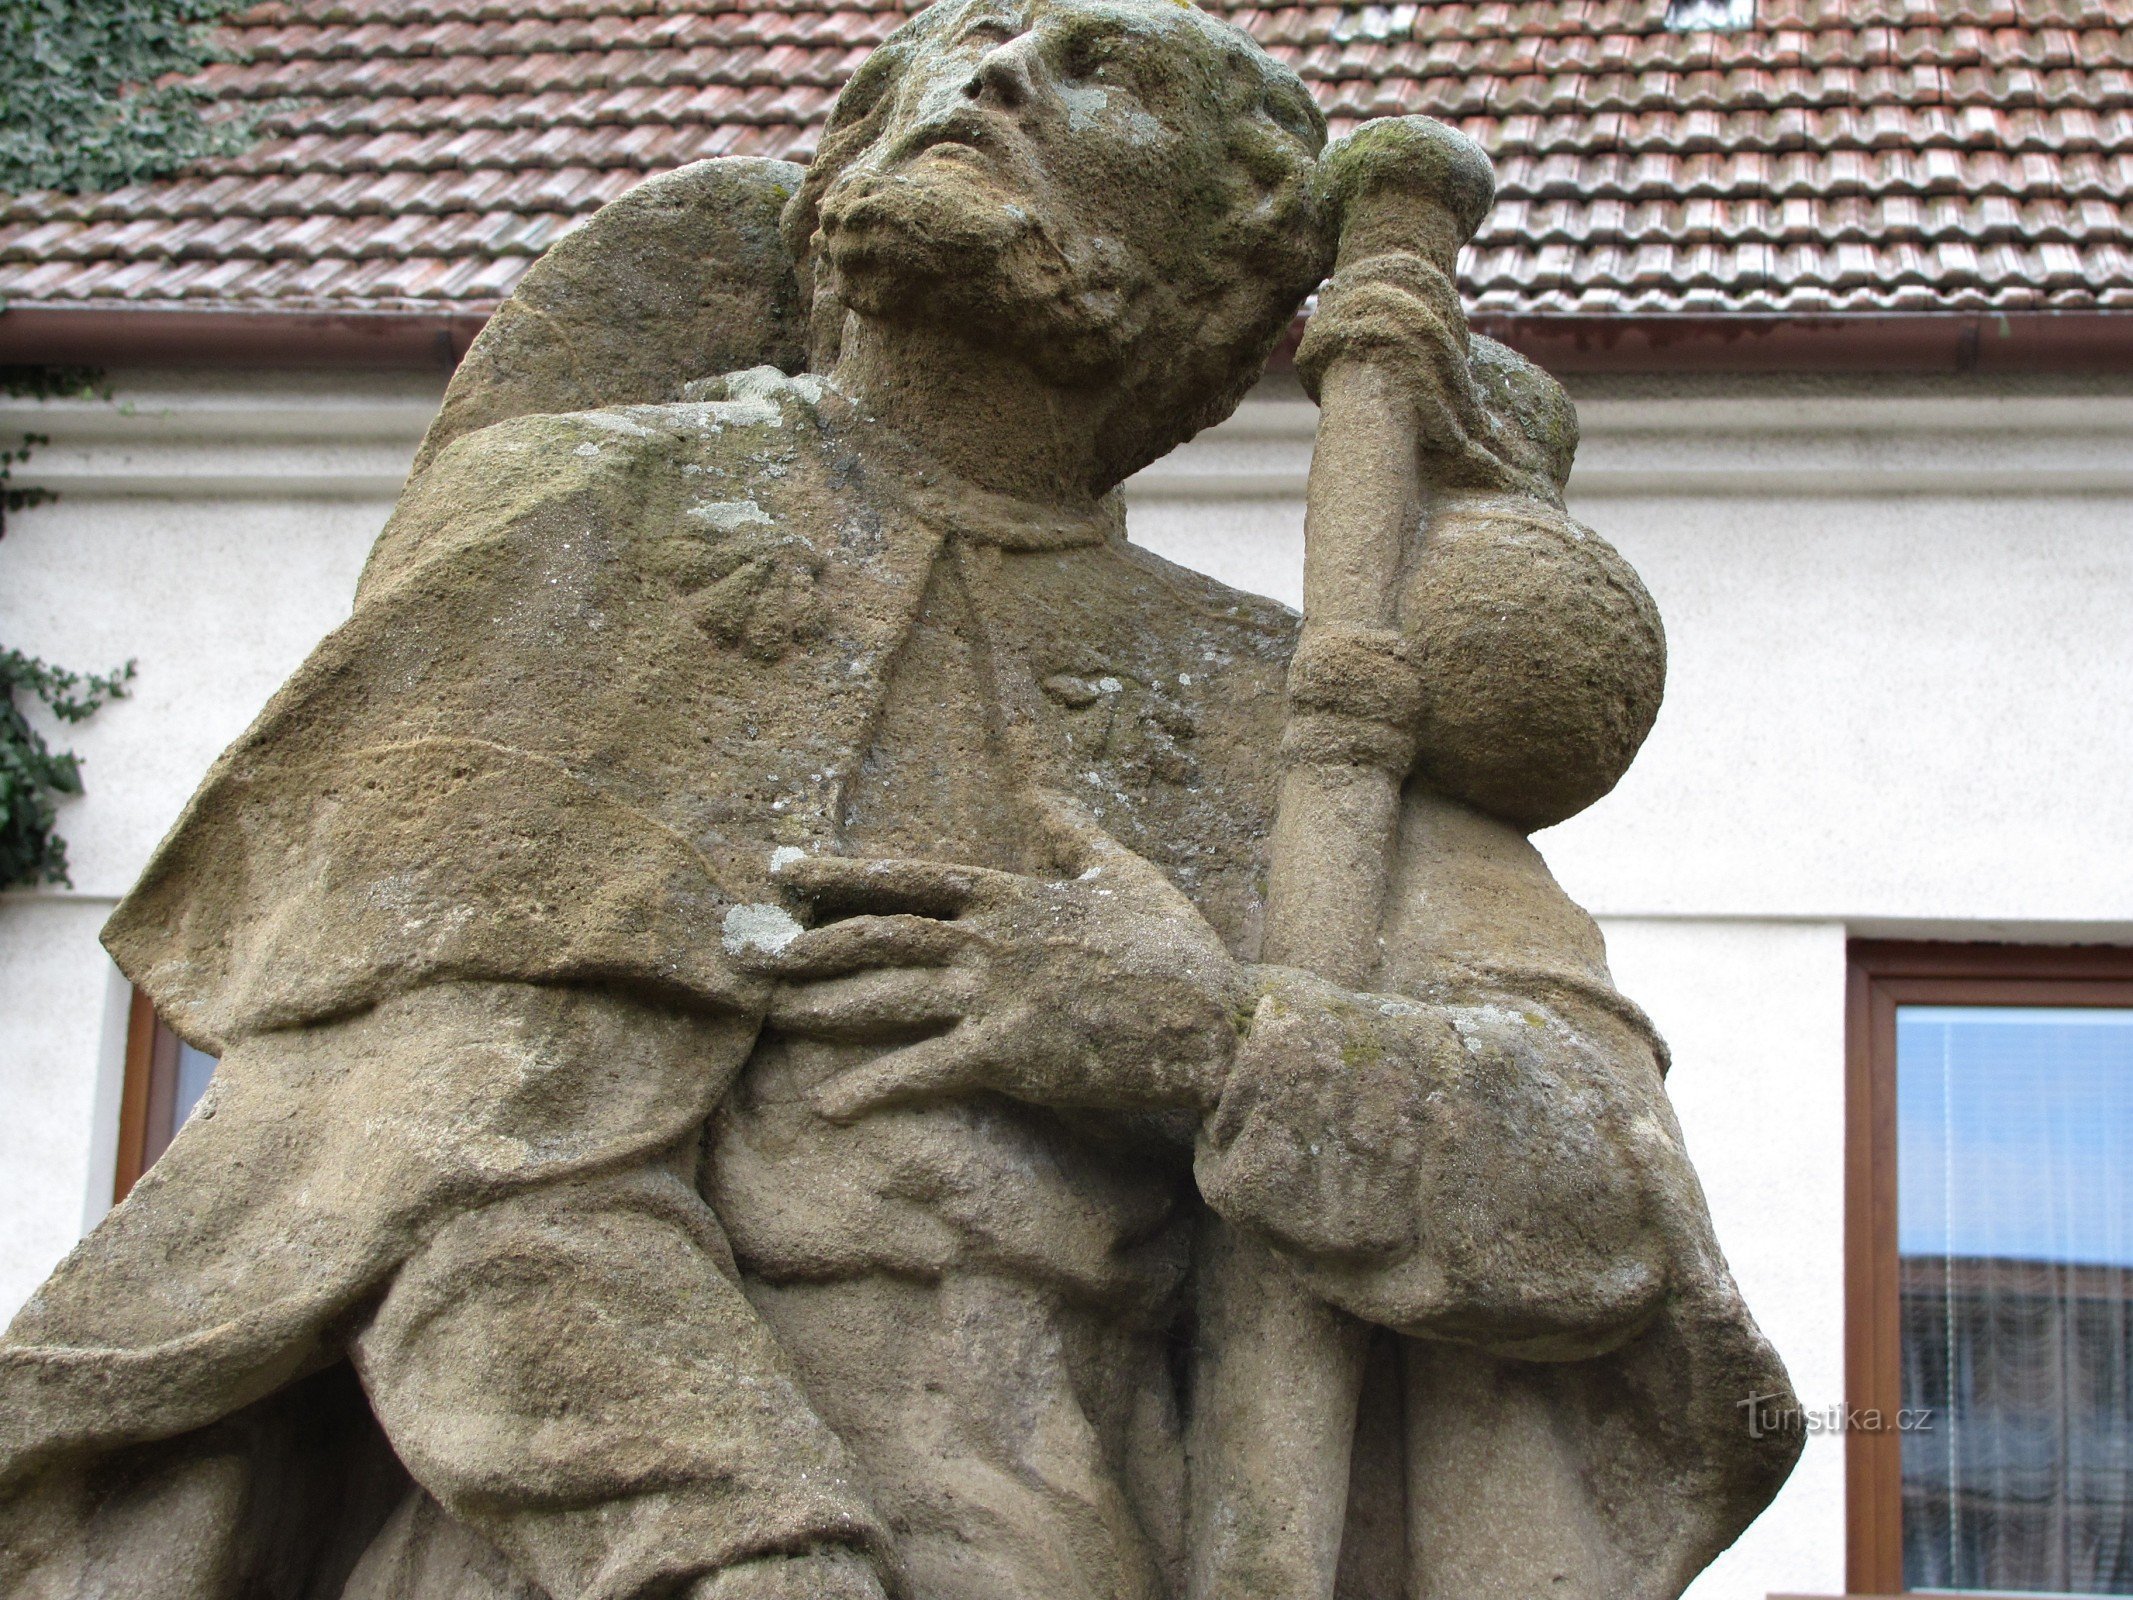 ボスコヴィツェ - 聖の像ロチャ